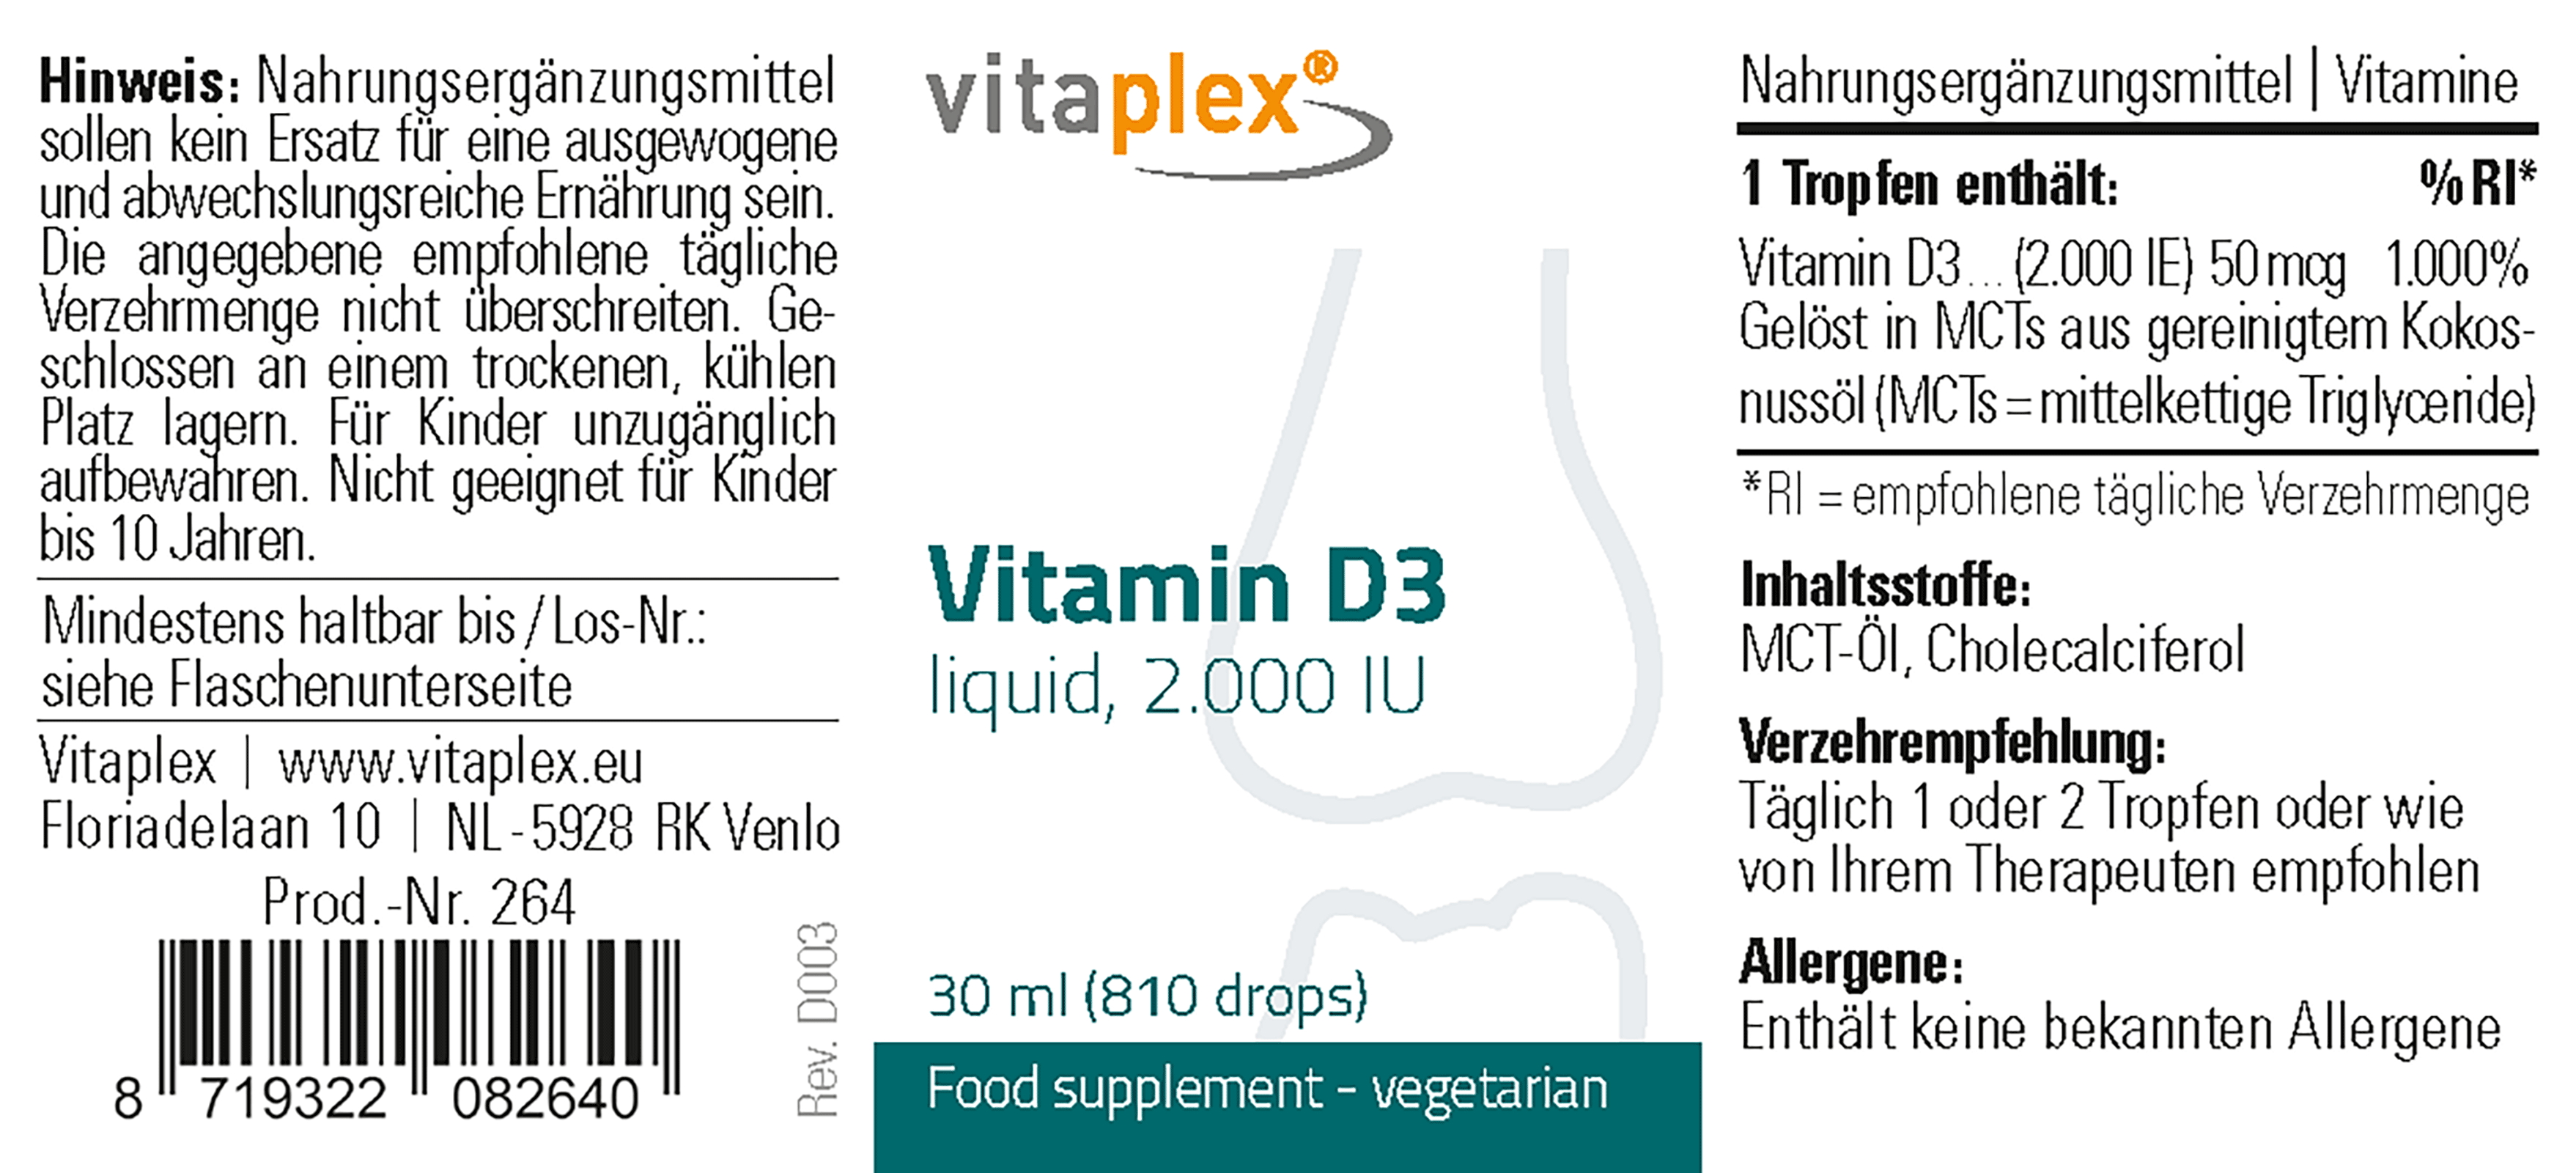 Vitamin D3 liquid, 2.000 IU / drop 